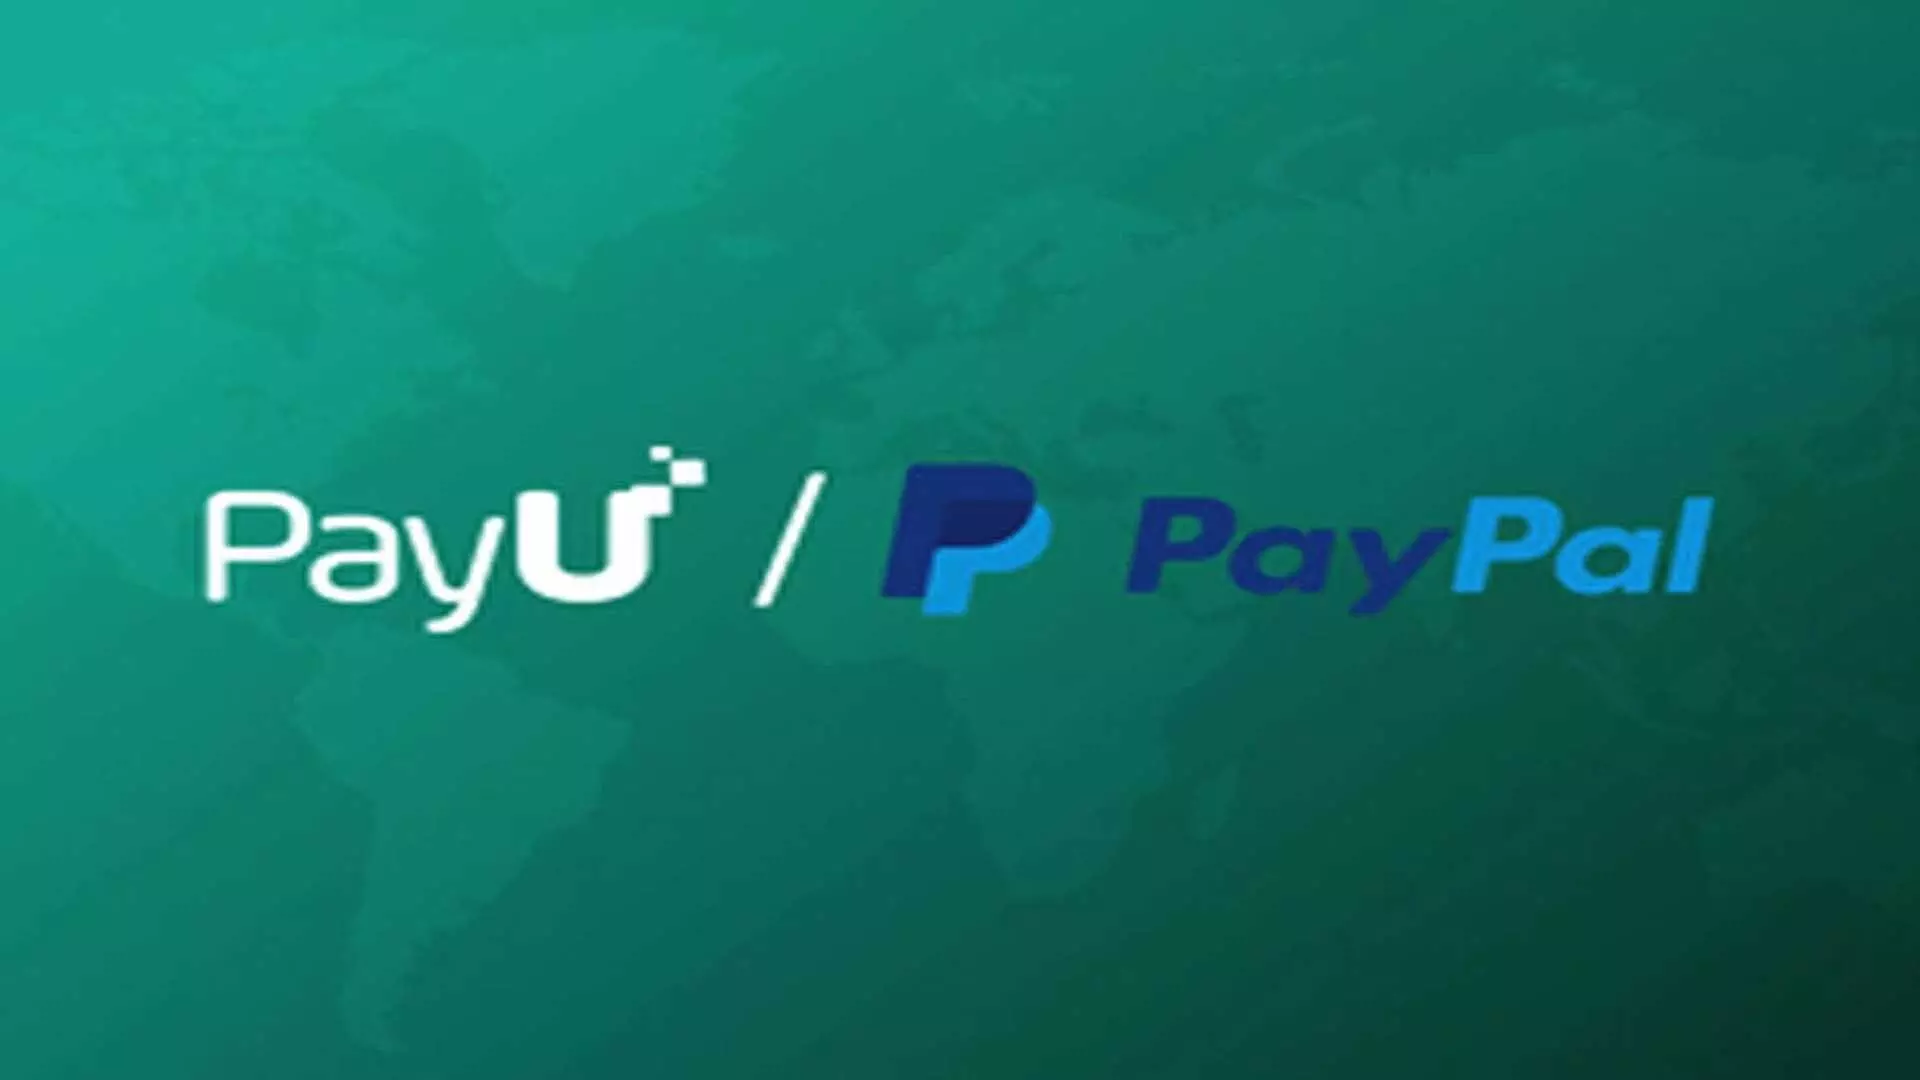 PayU ने भारतीय व्यापारियों के लिए सीमा पार से भुगतान को बेहतर बनाने के लिए PayPal के साथ साझेदारी की